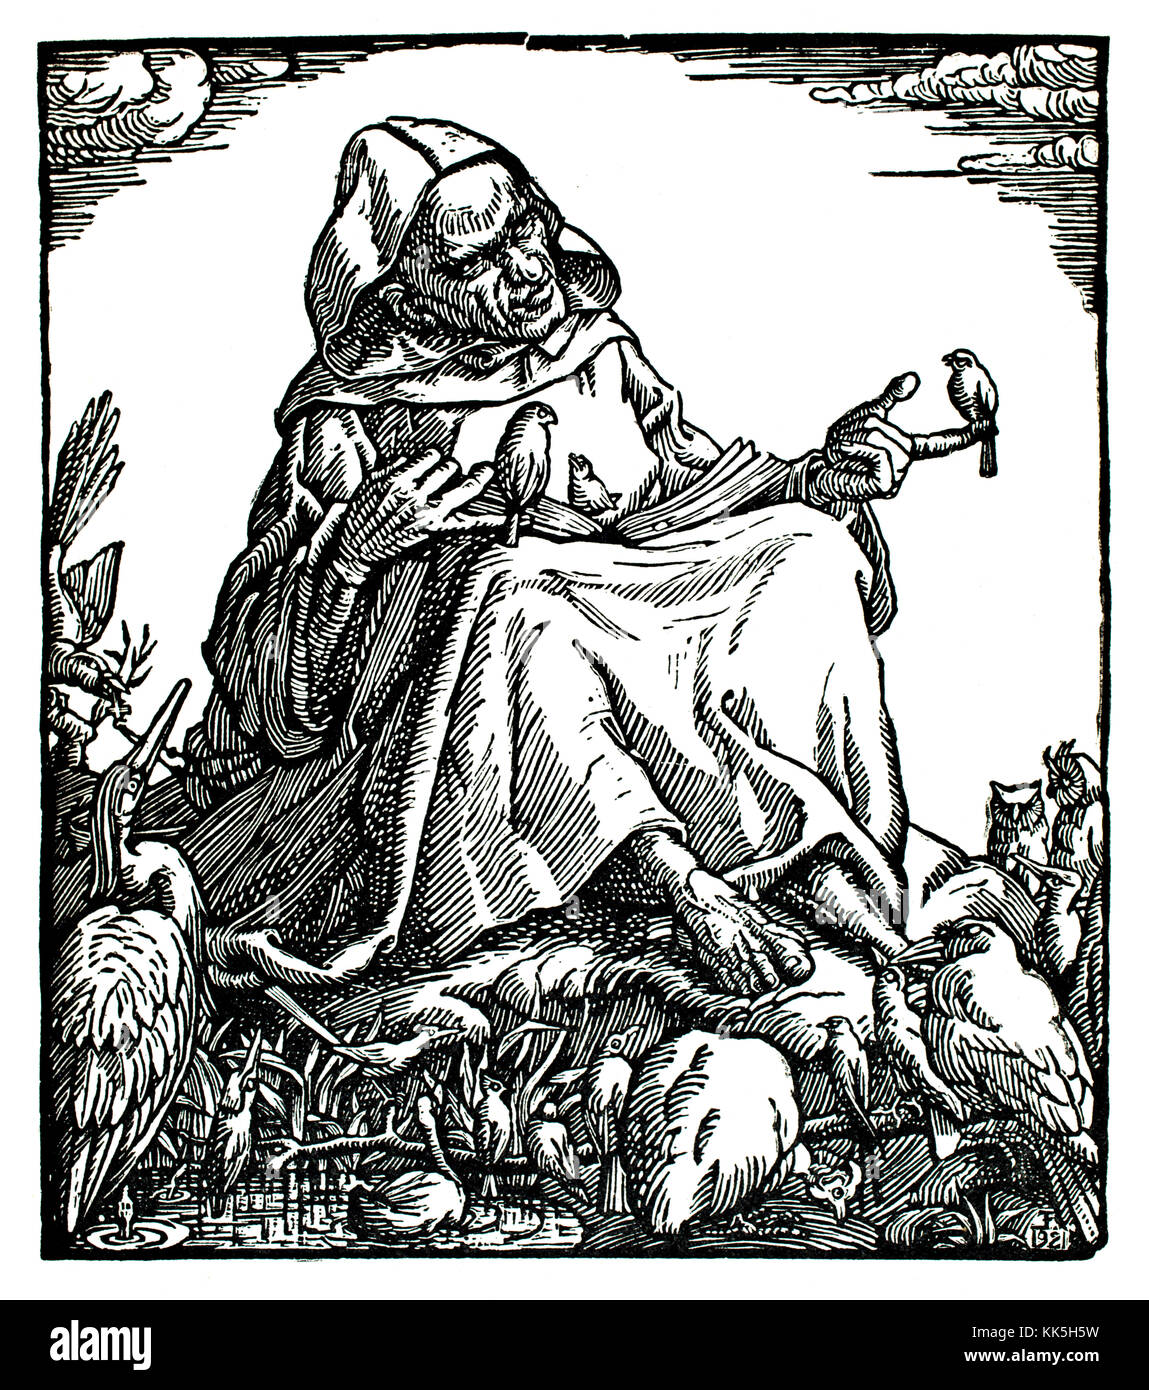 La Predica agli uccelli 1921 xilografia illustrazione dell'artista tedesco Erich Feyerabend Foto Stock